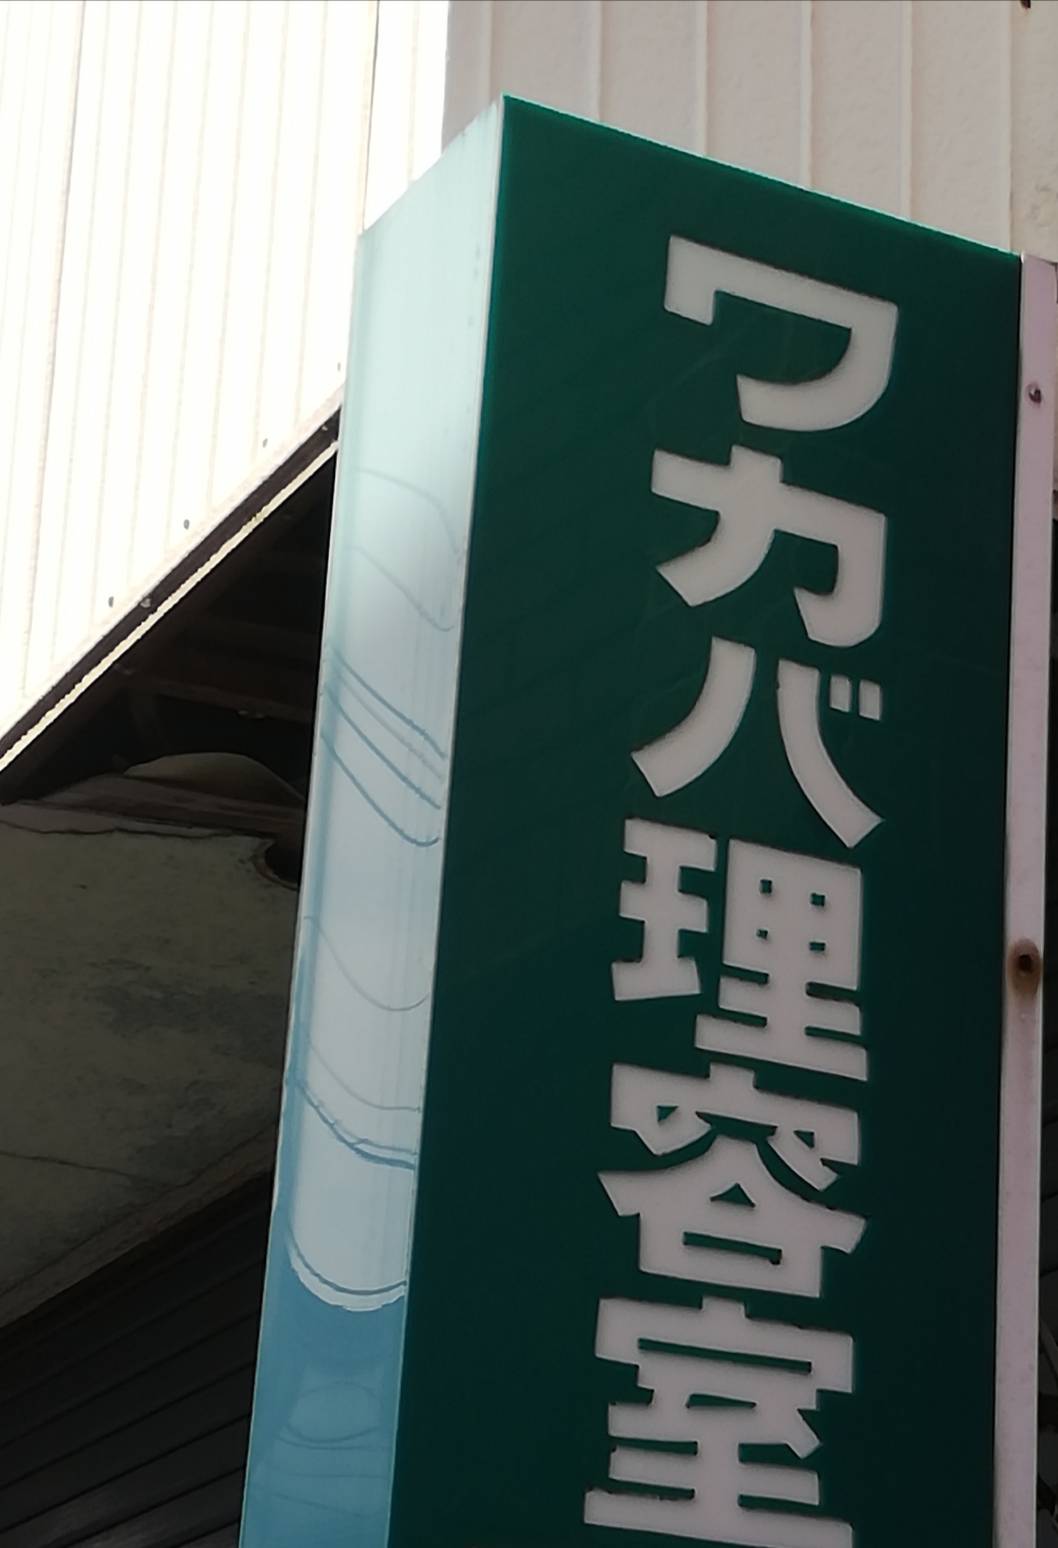 ワカバ理容室 元山 松戸市 は閉店されています 現地状況 松戸ロード 松戸の地域情報